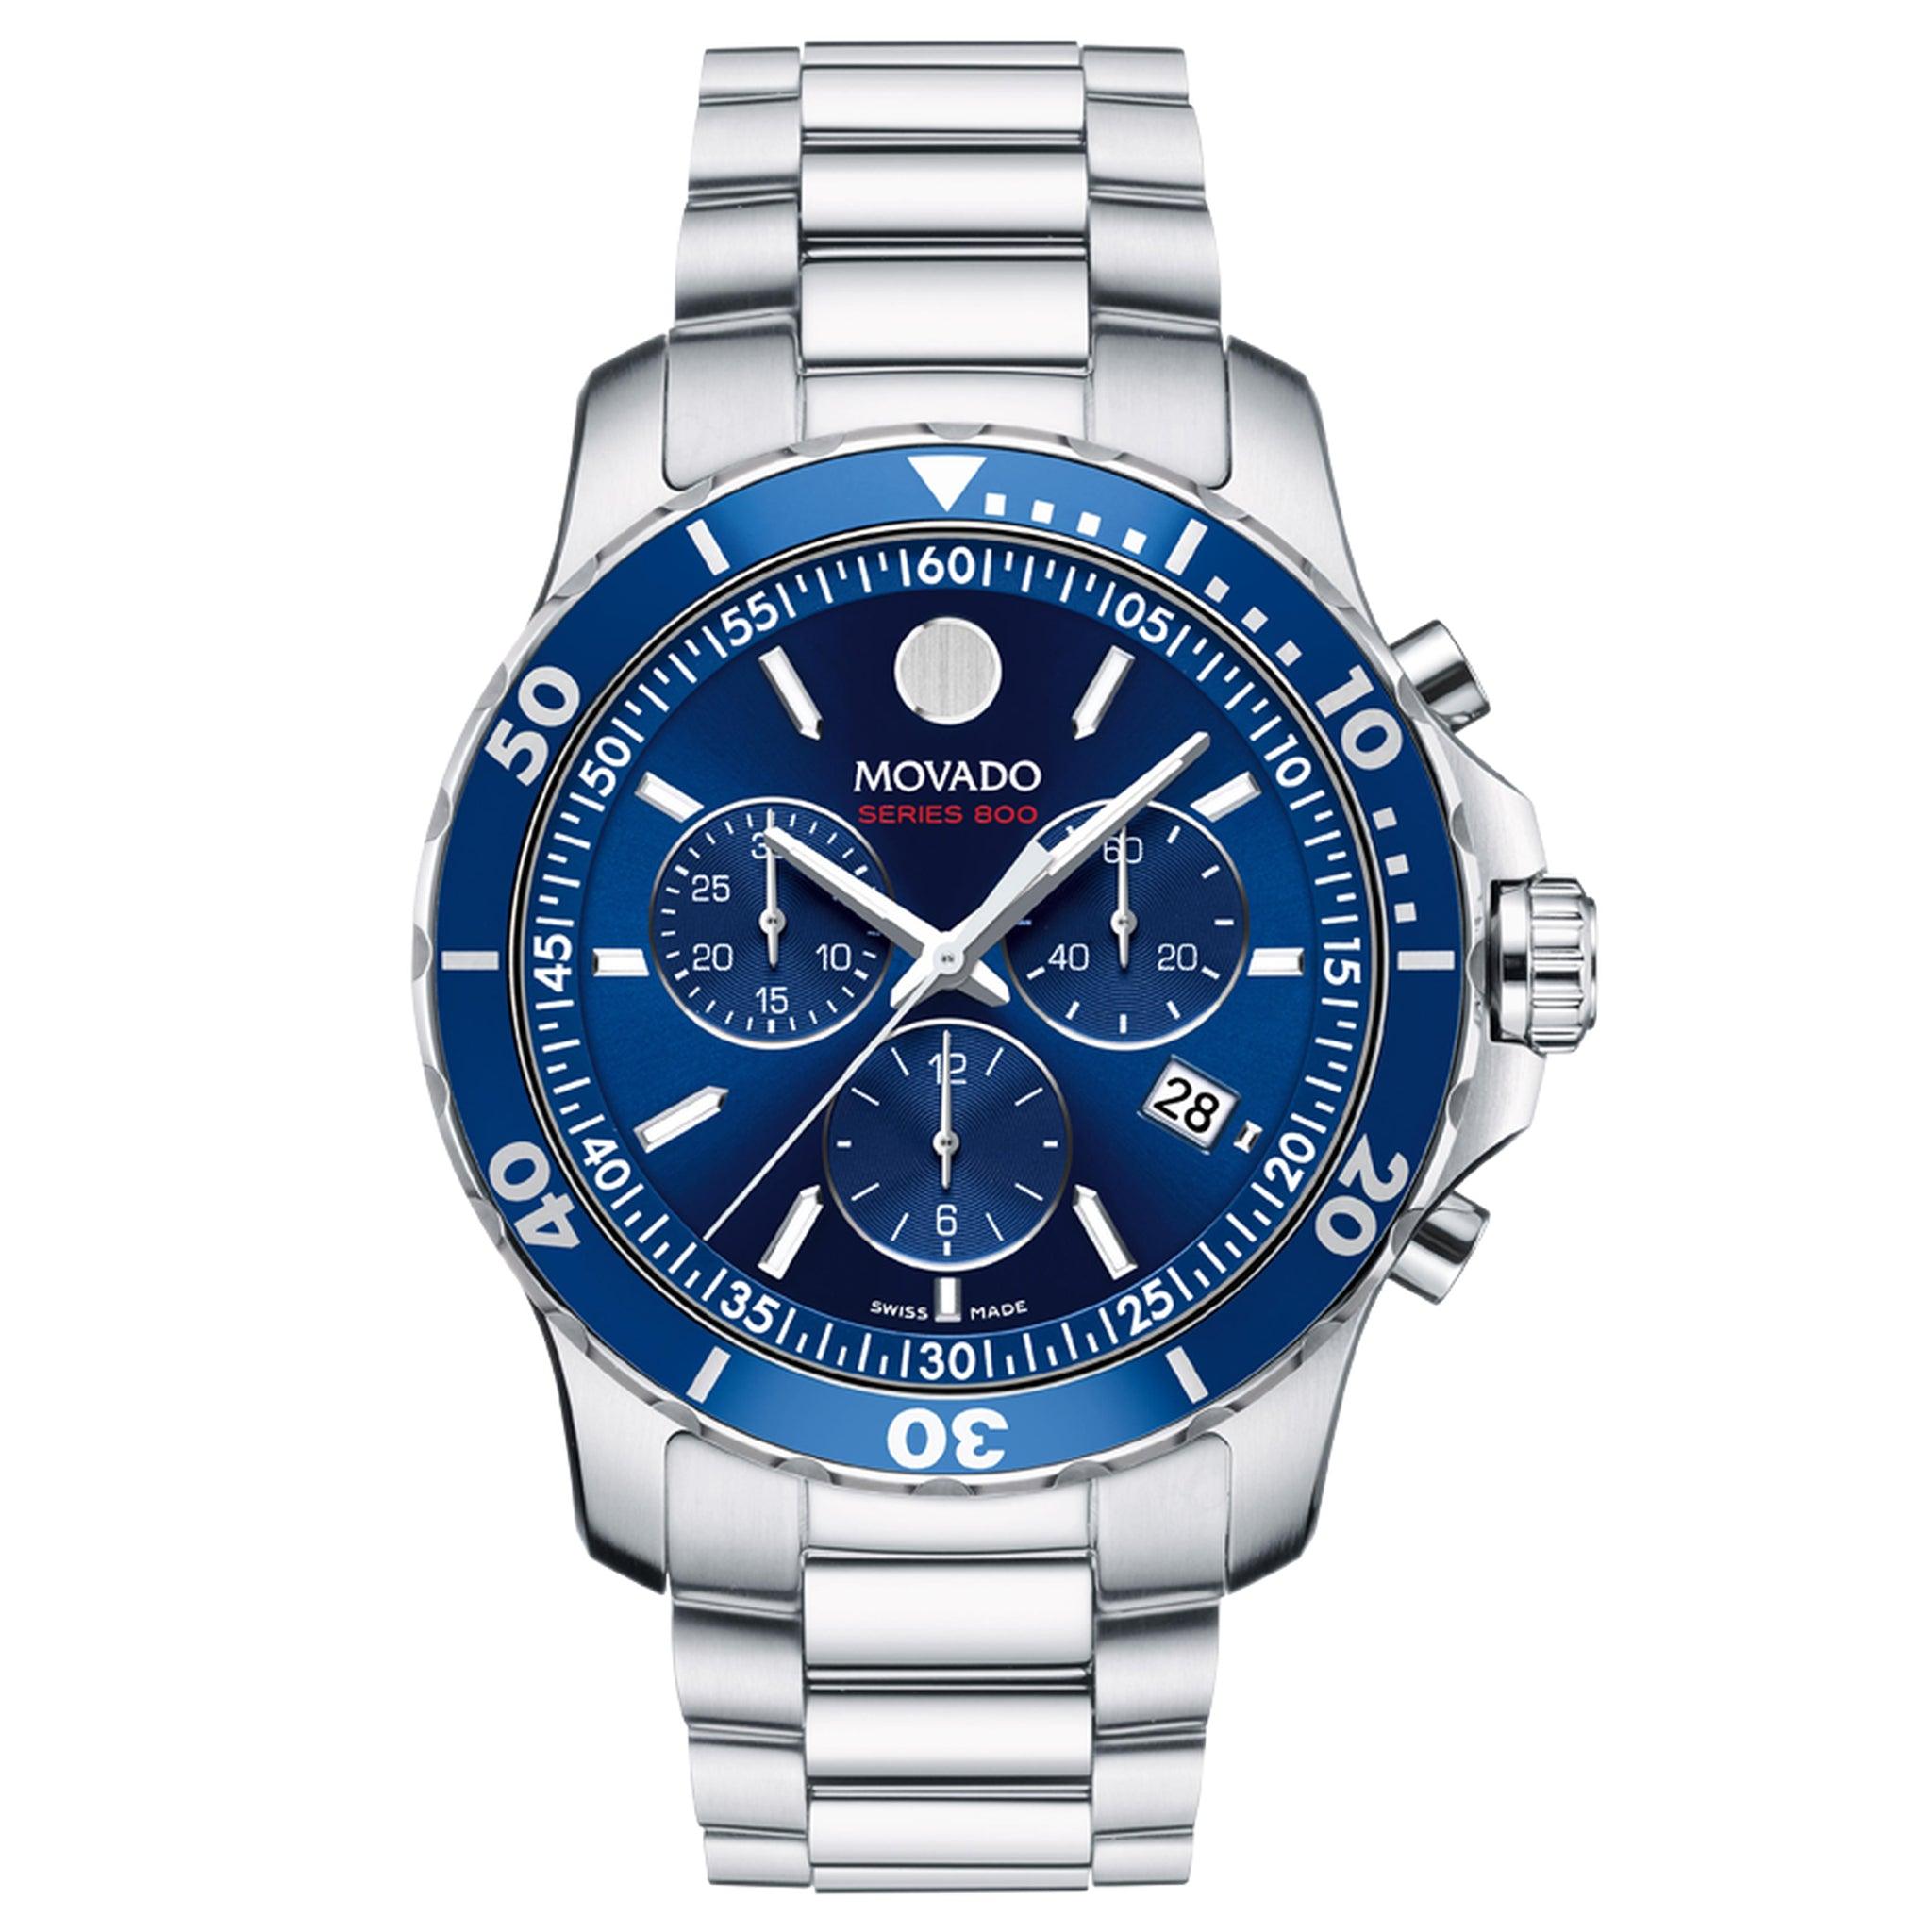 ساعة موفادو800 رياضية كرونوغراف بمينا مؤشرة مطبوعة باللون الأزرق للرجال Movado 2600141 Men's Series 800 Sport Chronograph Watch With Printed Index Dial Blue